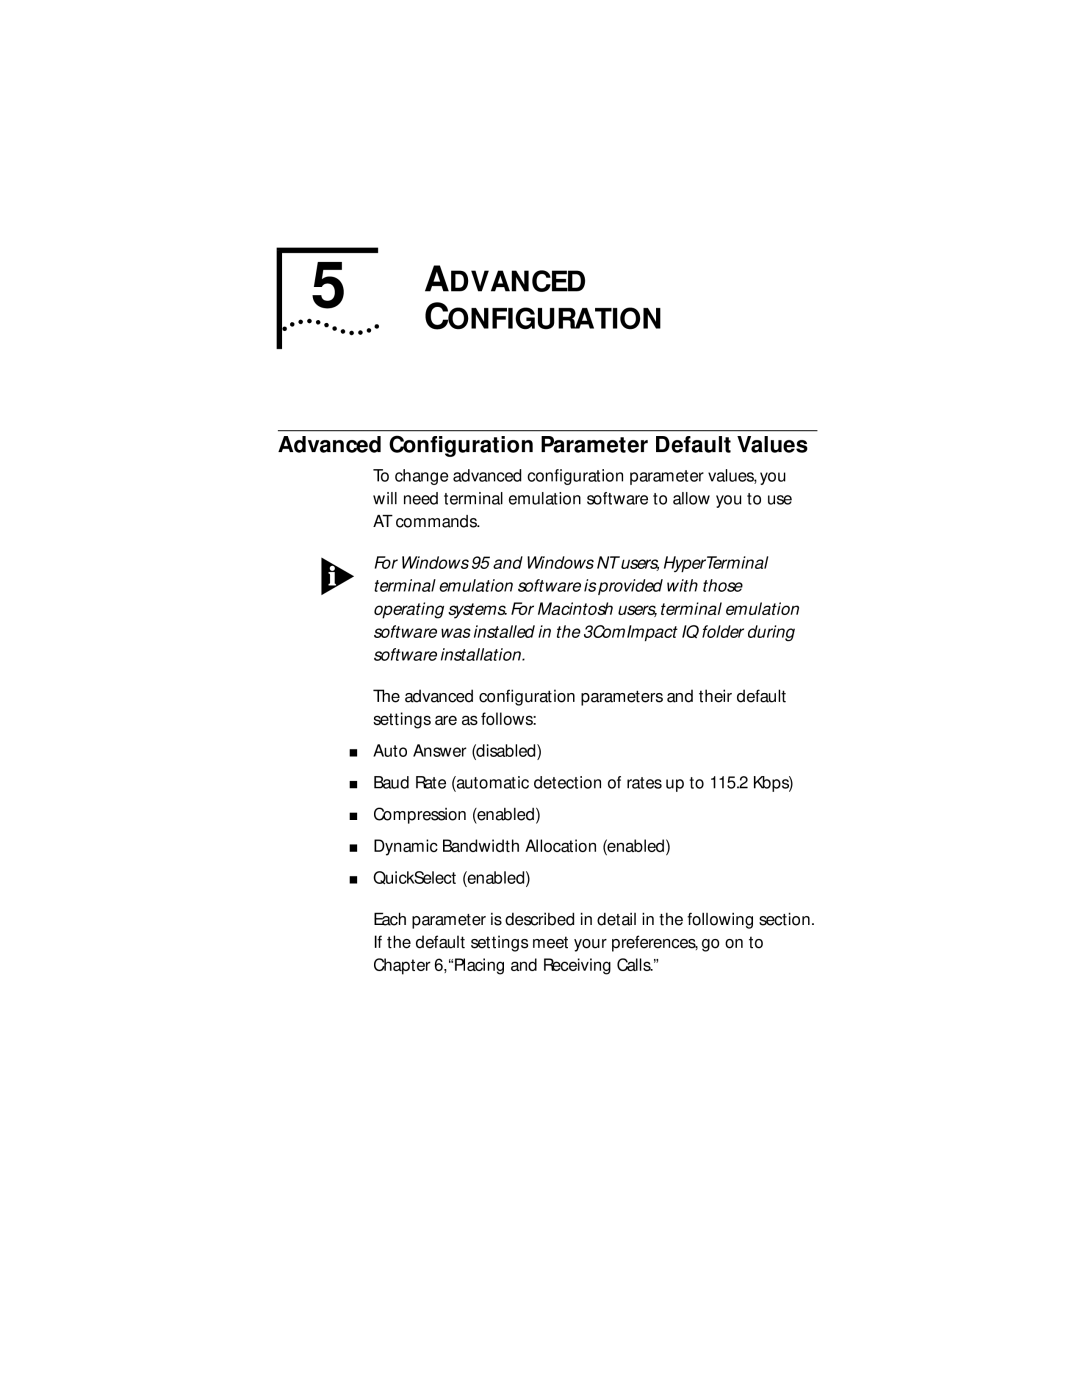 3Com 3C882 manual Advanced Configuration, Advanced Conﬁguration Parameter Default Values 